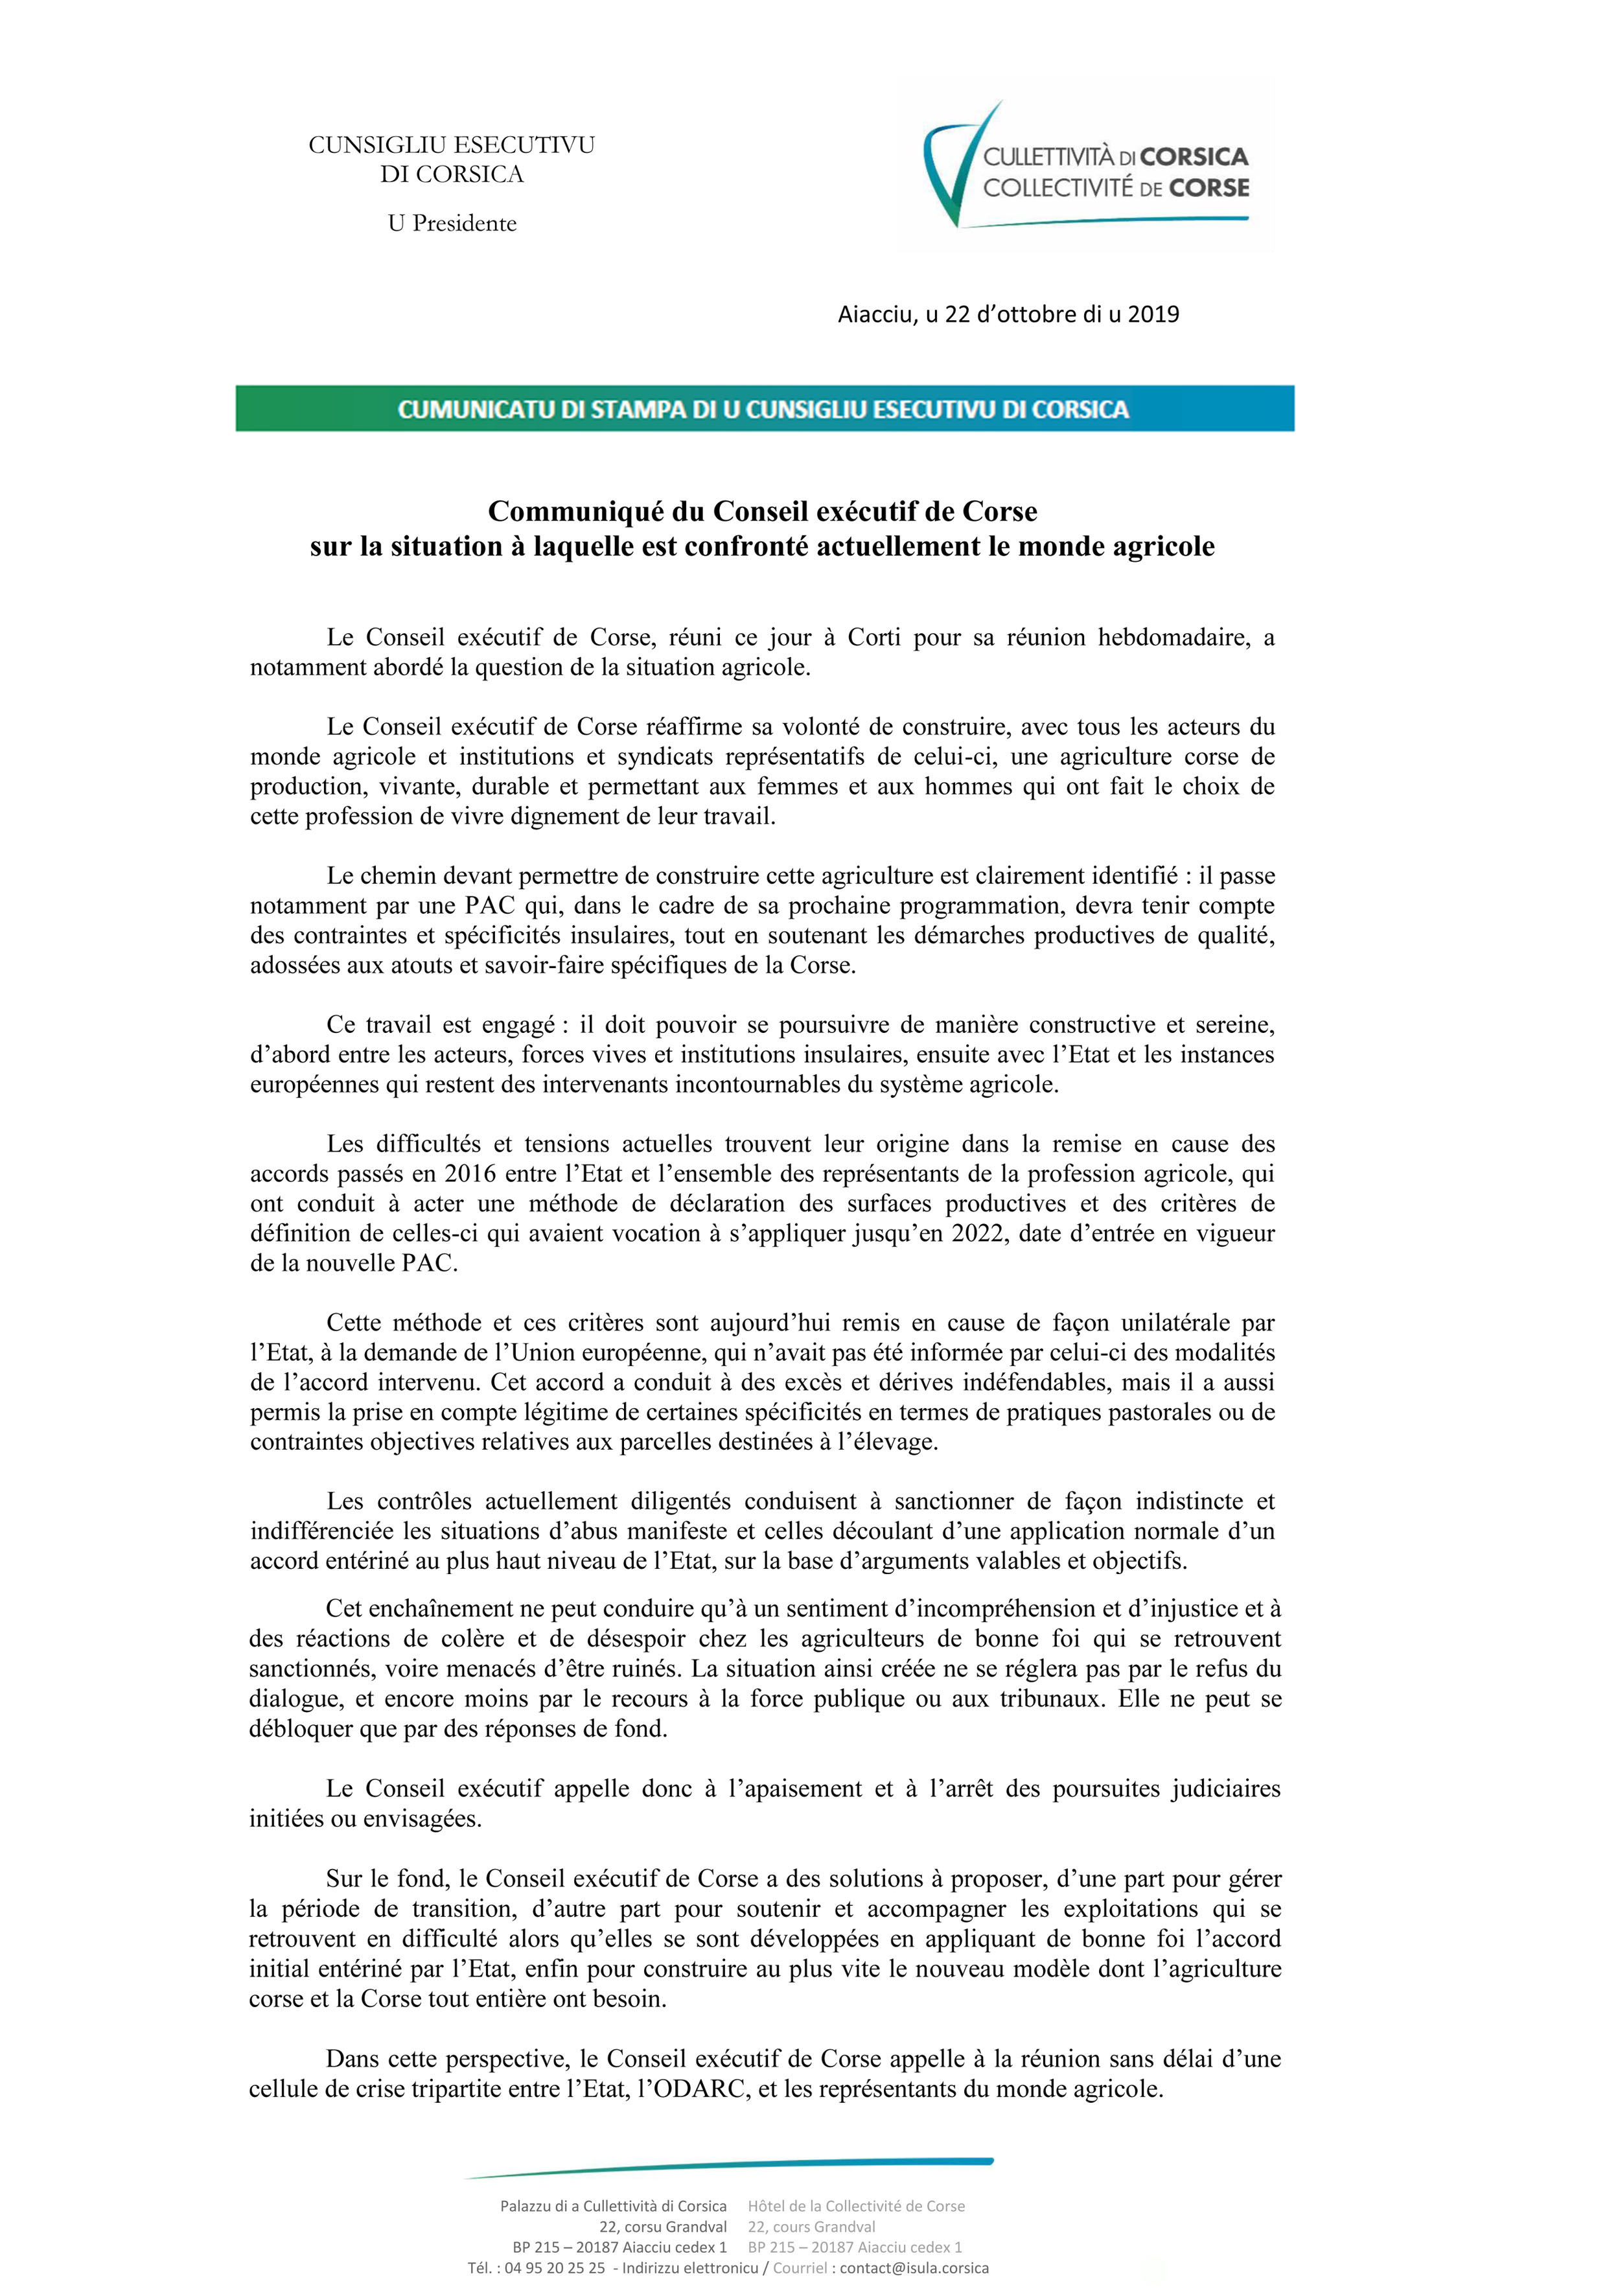 Le Conseil exécutif de Corse s'exprime sur la situation à laquelle est confronté actuellement le monde agricole